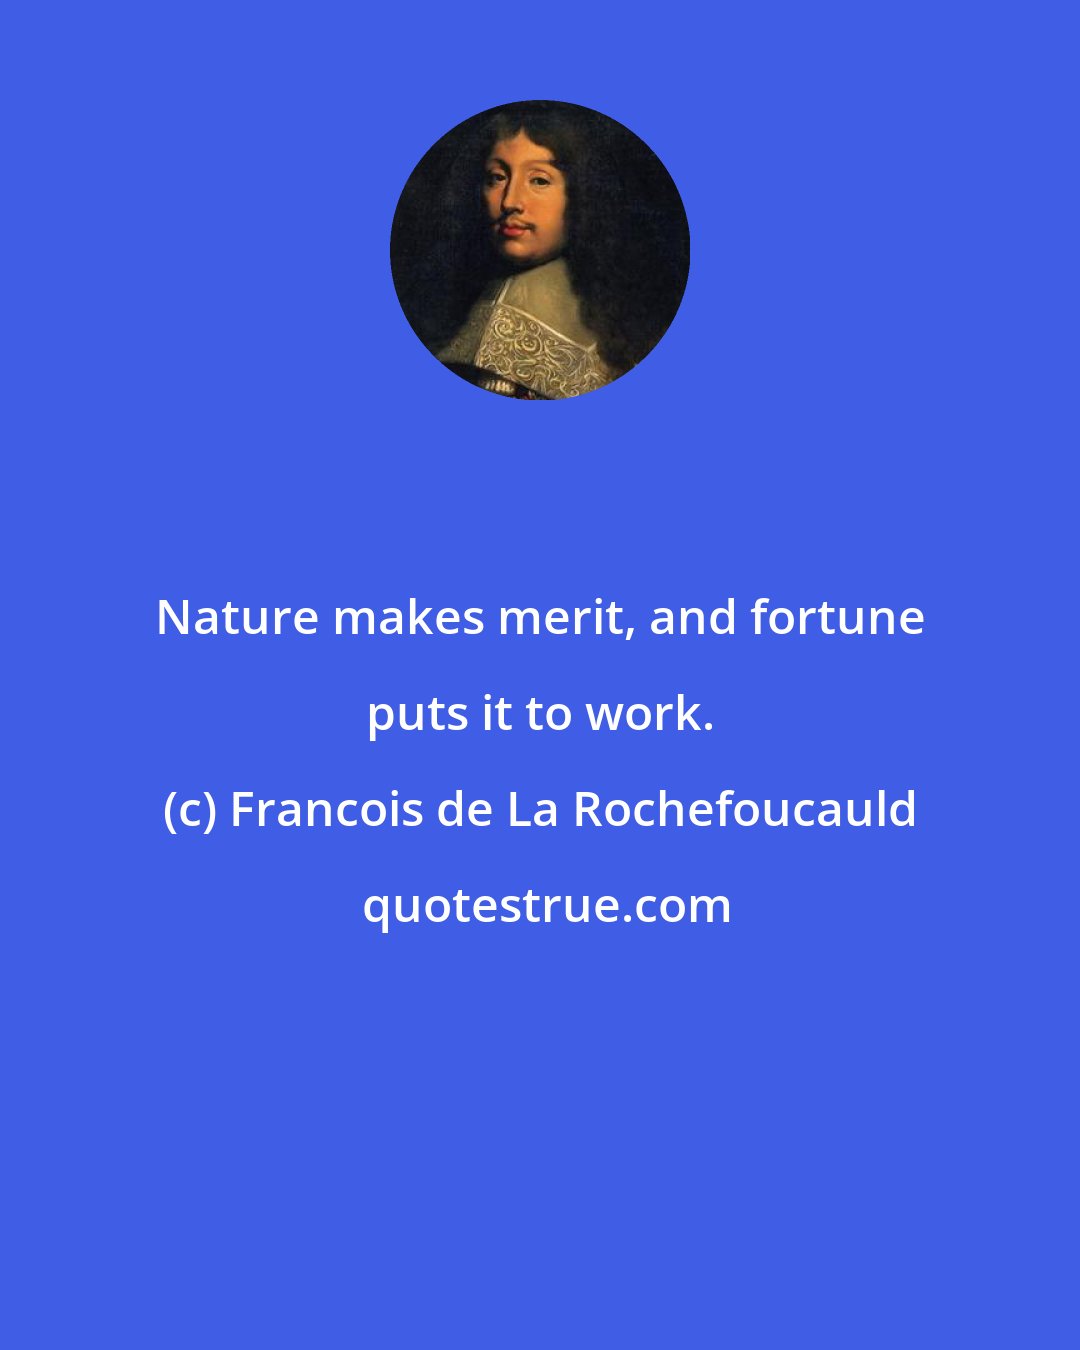 Francois de La Rochefoucauld: Nature makes merit, and fortune puts it to work.